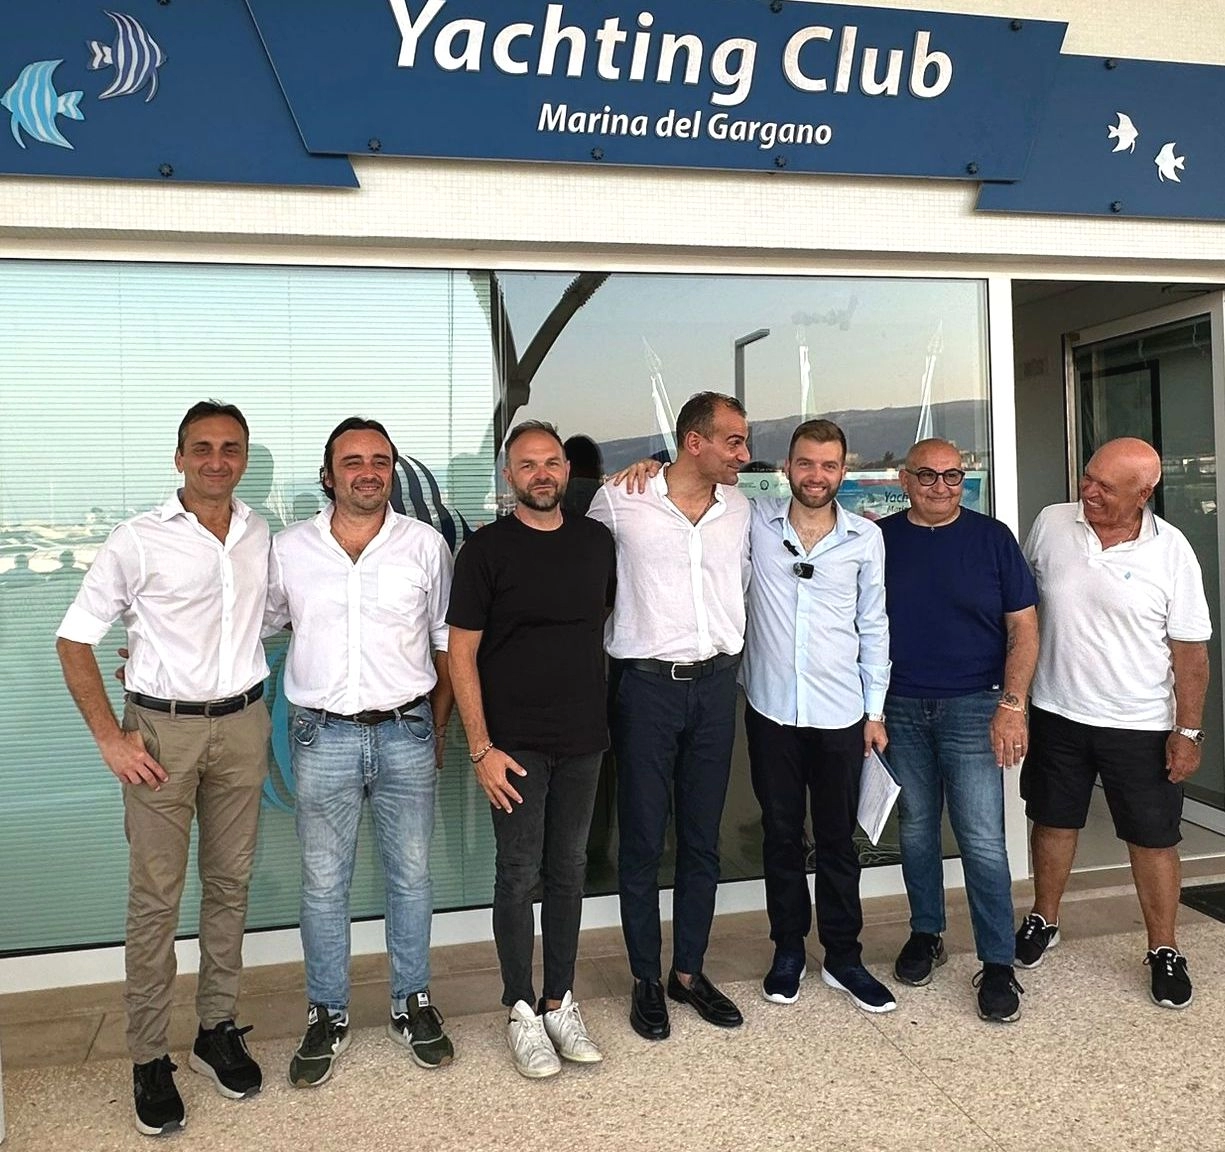 Dallo Yachting Club del Marina del Gargano, Porto turistico di Manfredonia